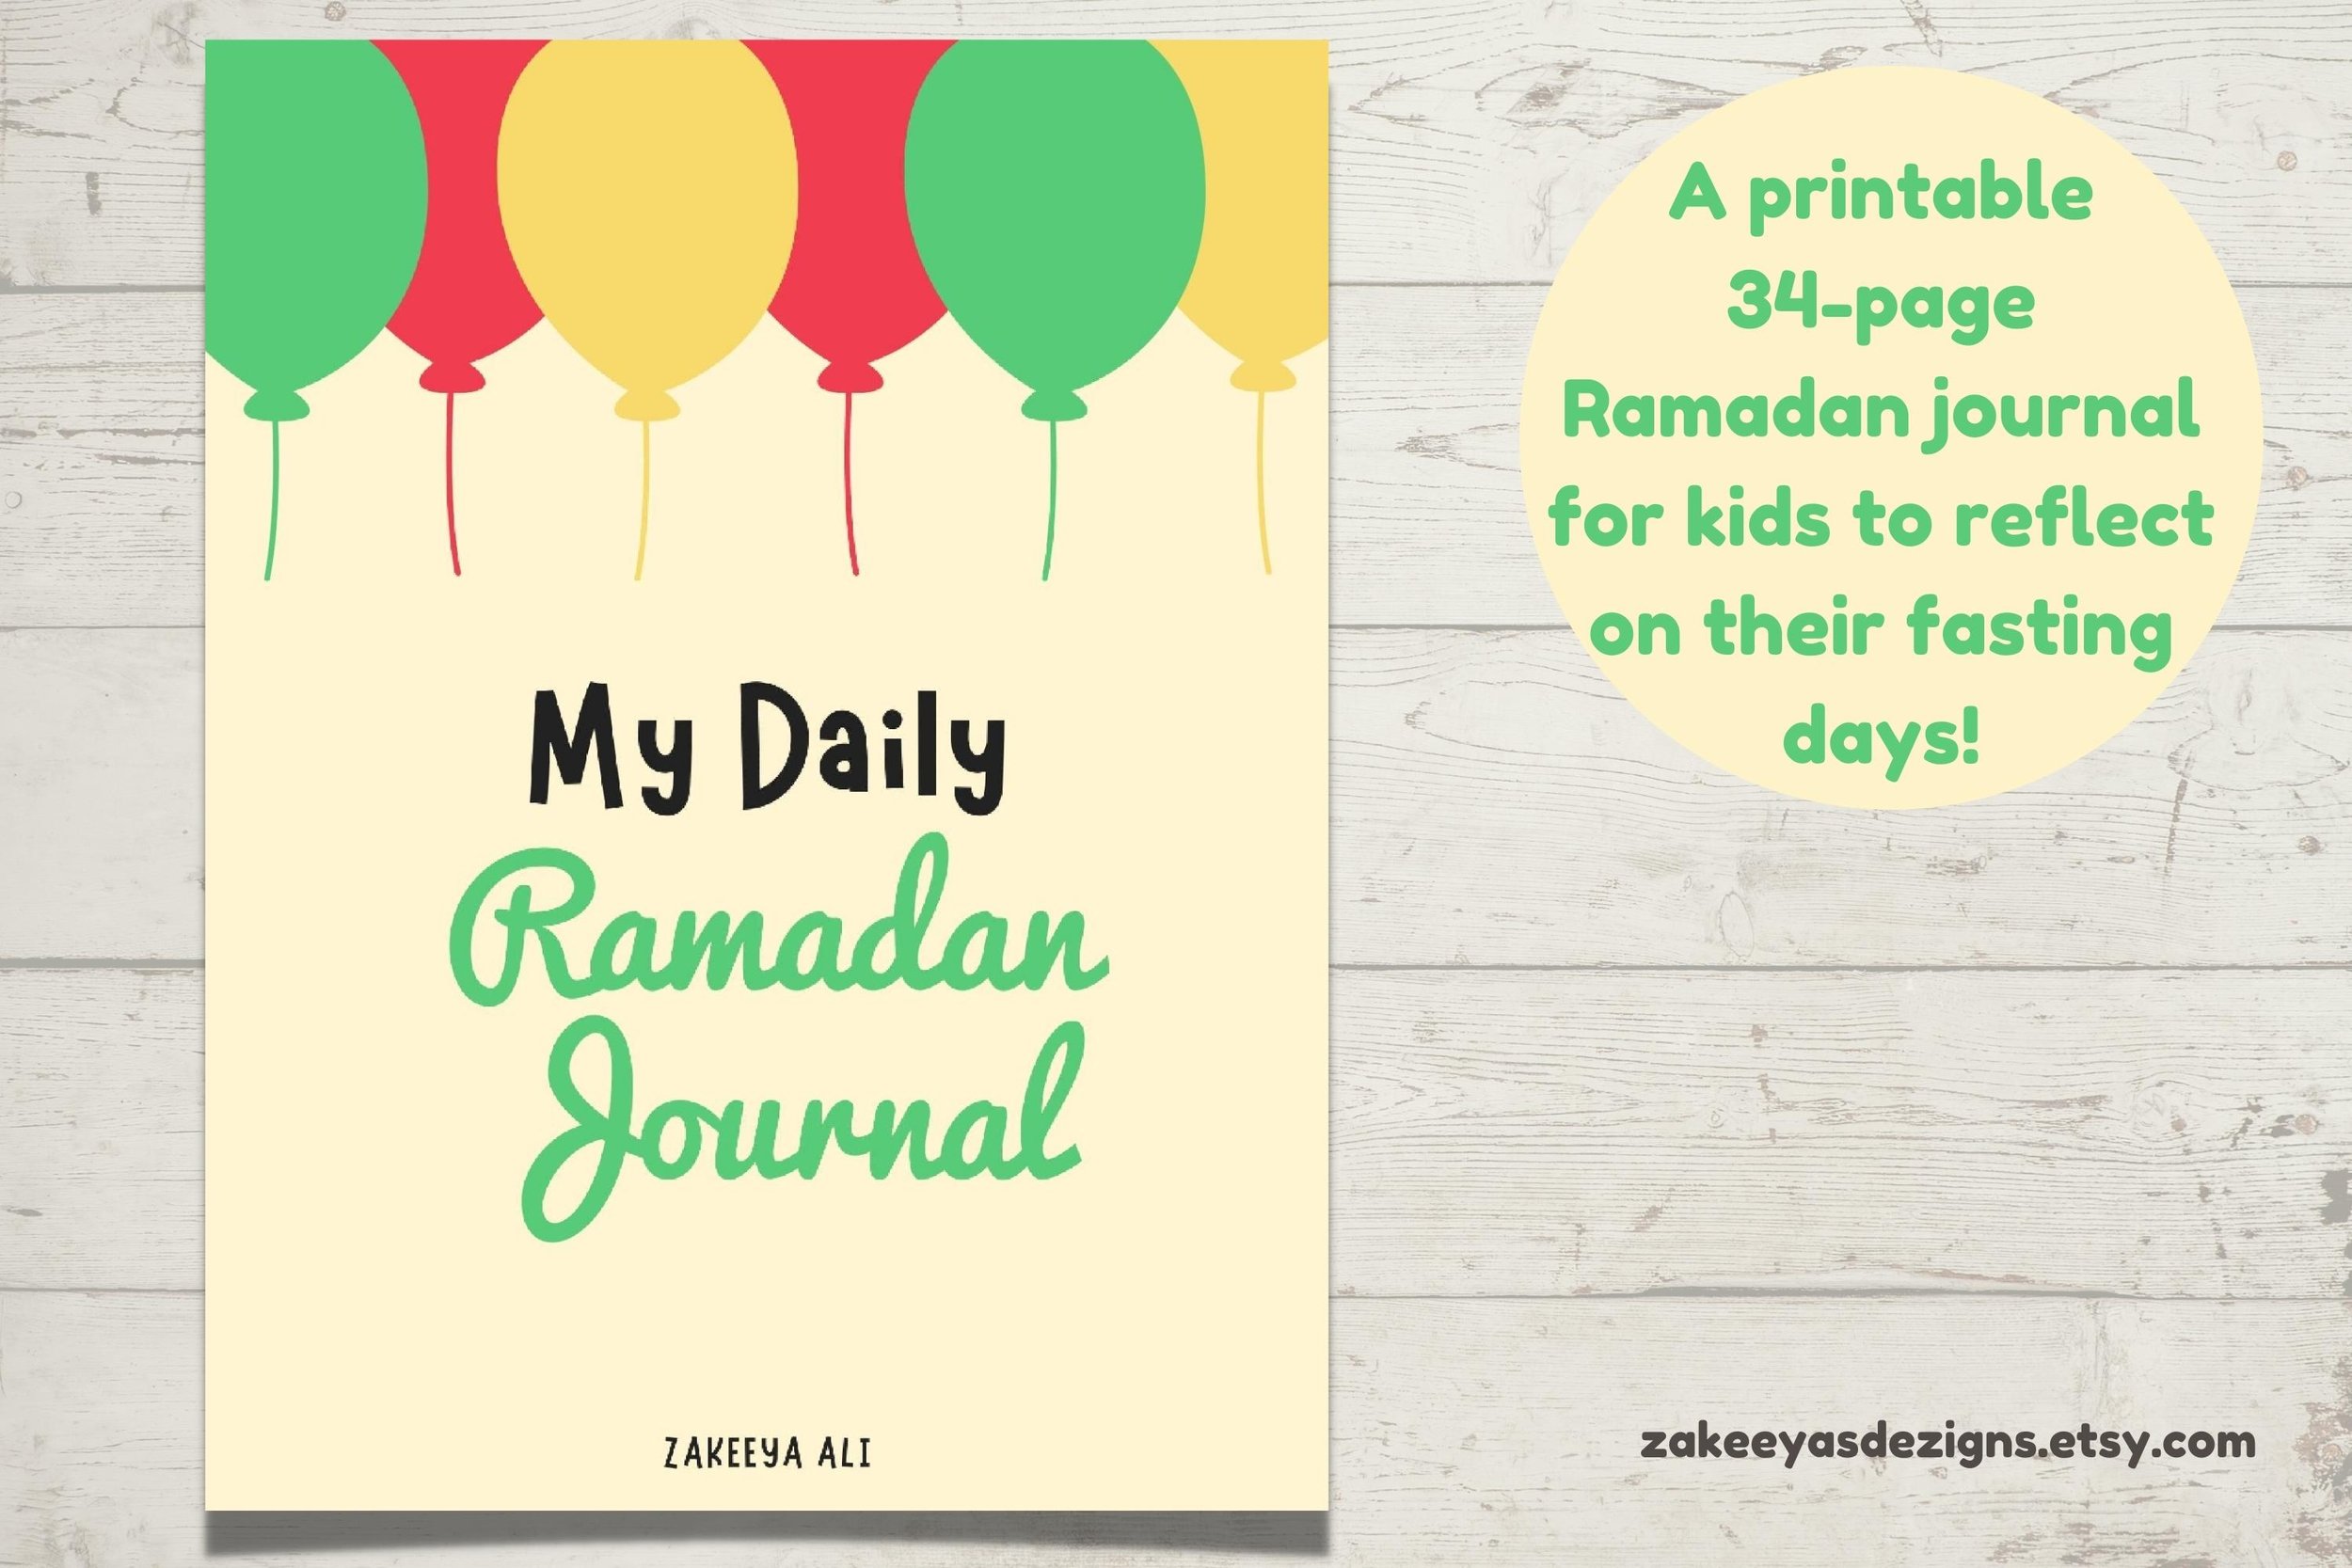 Printable Ramadan Kids Journal In Green.jpg